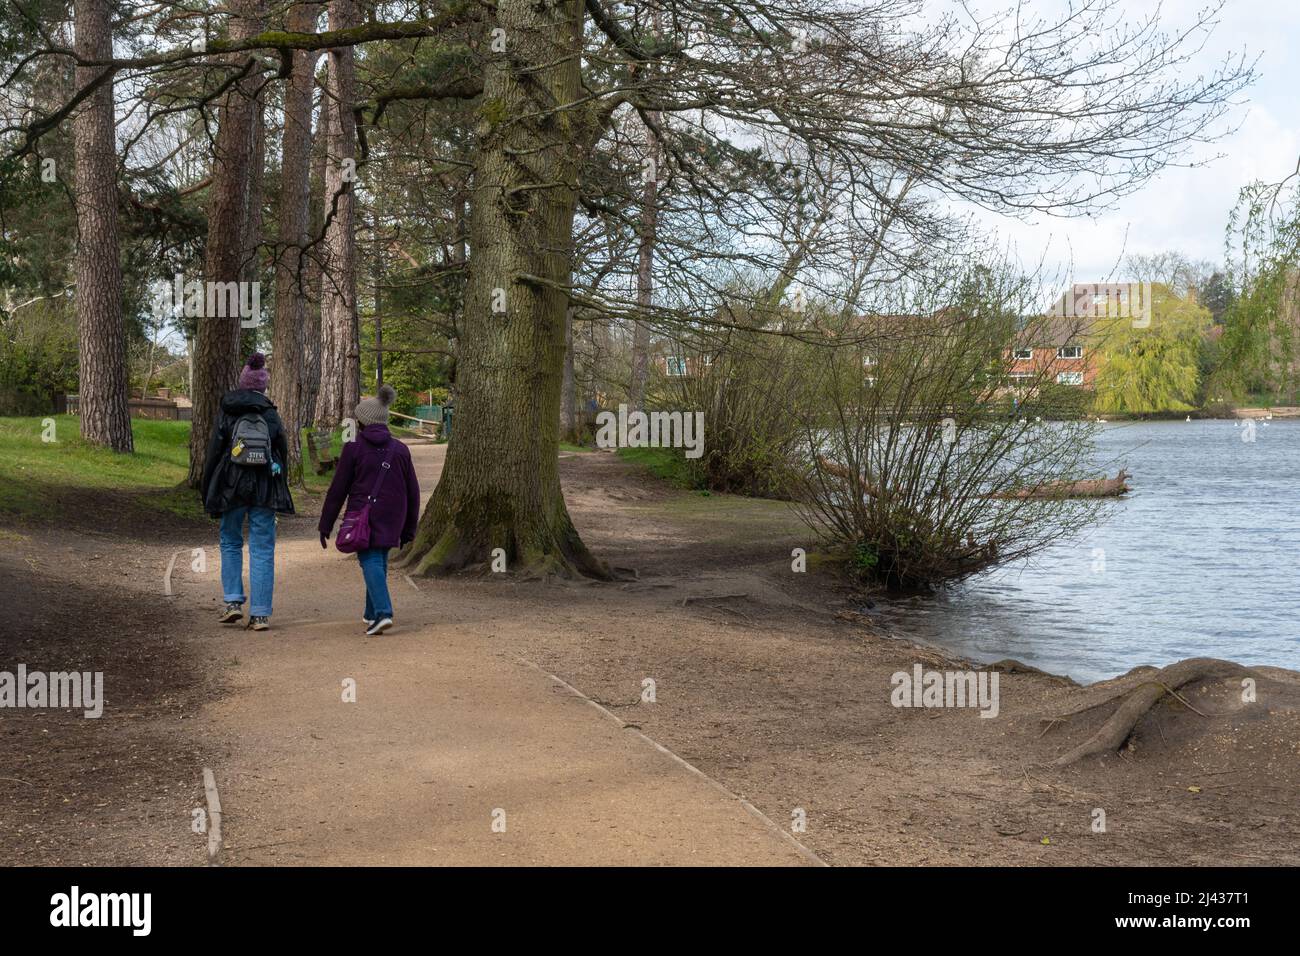 Petersfield Heath Pond, eine Besucherattraktion und ein Tierpark in Hampshire, England, Großbritannien, mit Menschen, die auf einem Fußweg um den Teich herumlaufen Stockfoto